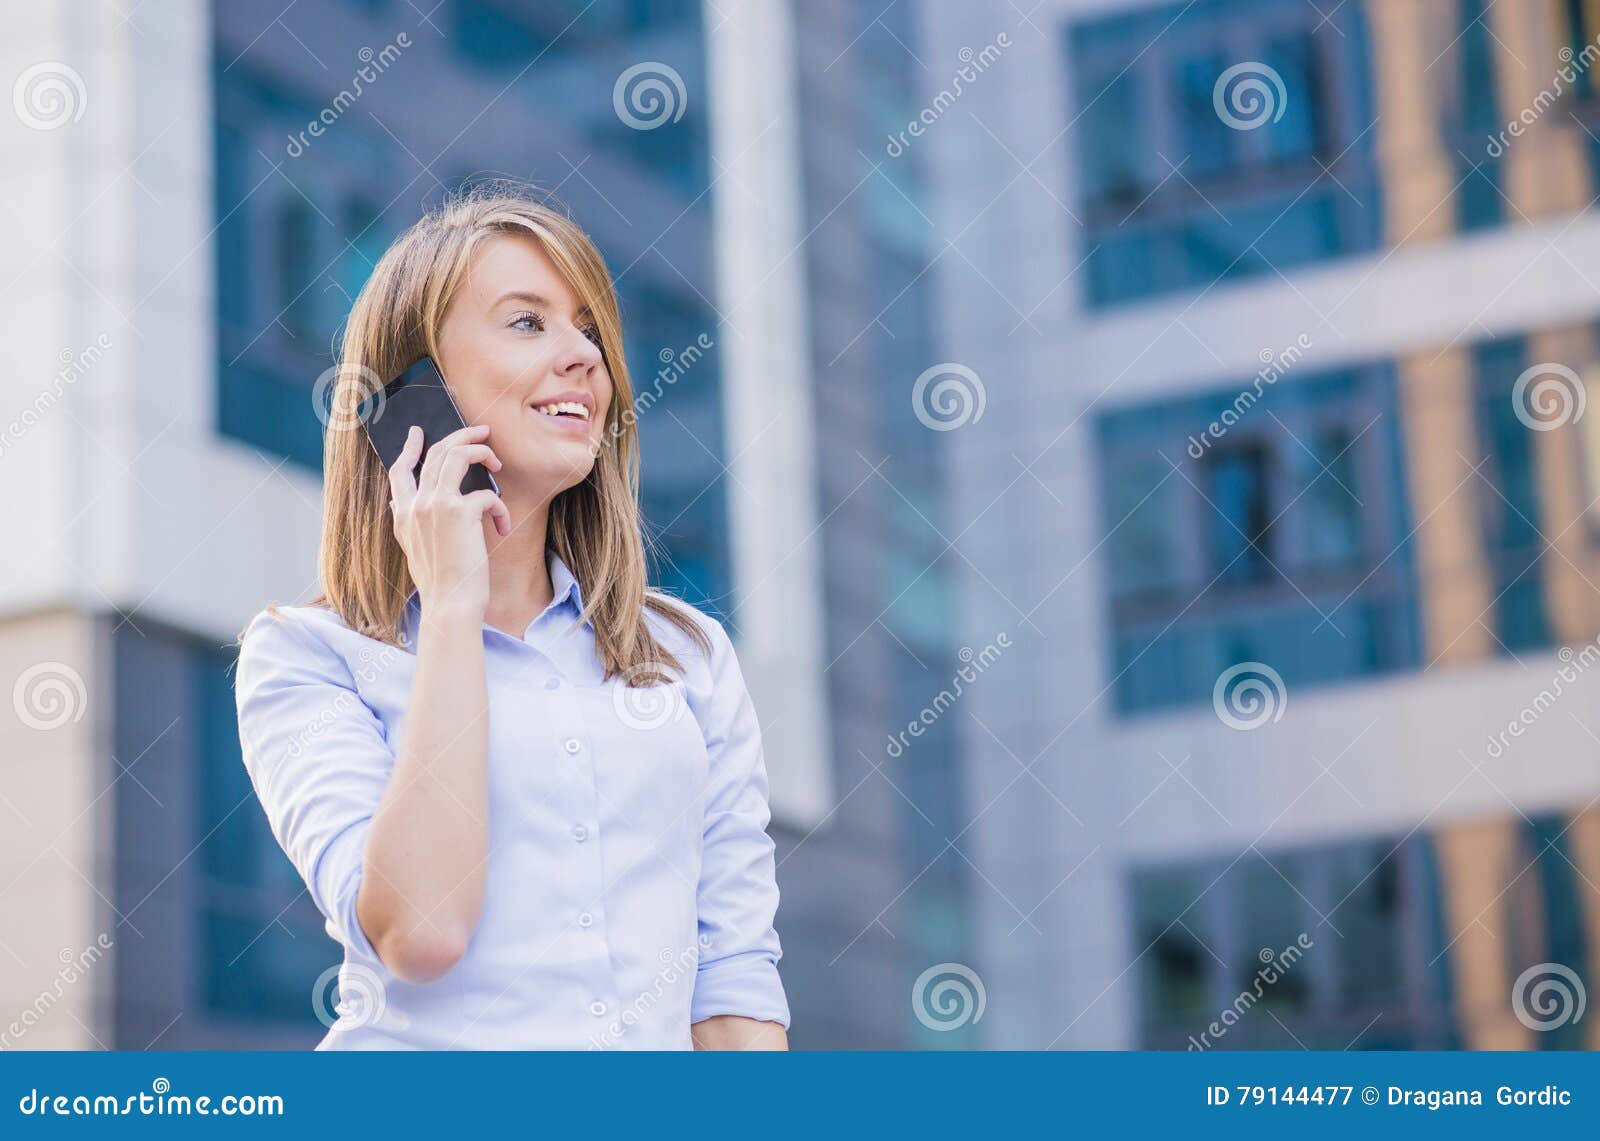 Πορτρέτο επιχειρησιακών γυναικών που μιλά υπαίθρια στο τηλέφωνο με το σύγχρονο κτήριο ως υπόβαθρο